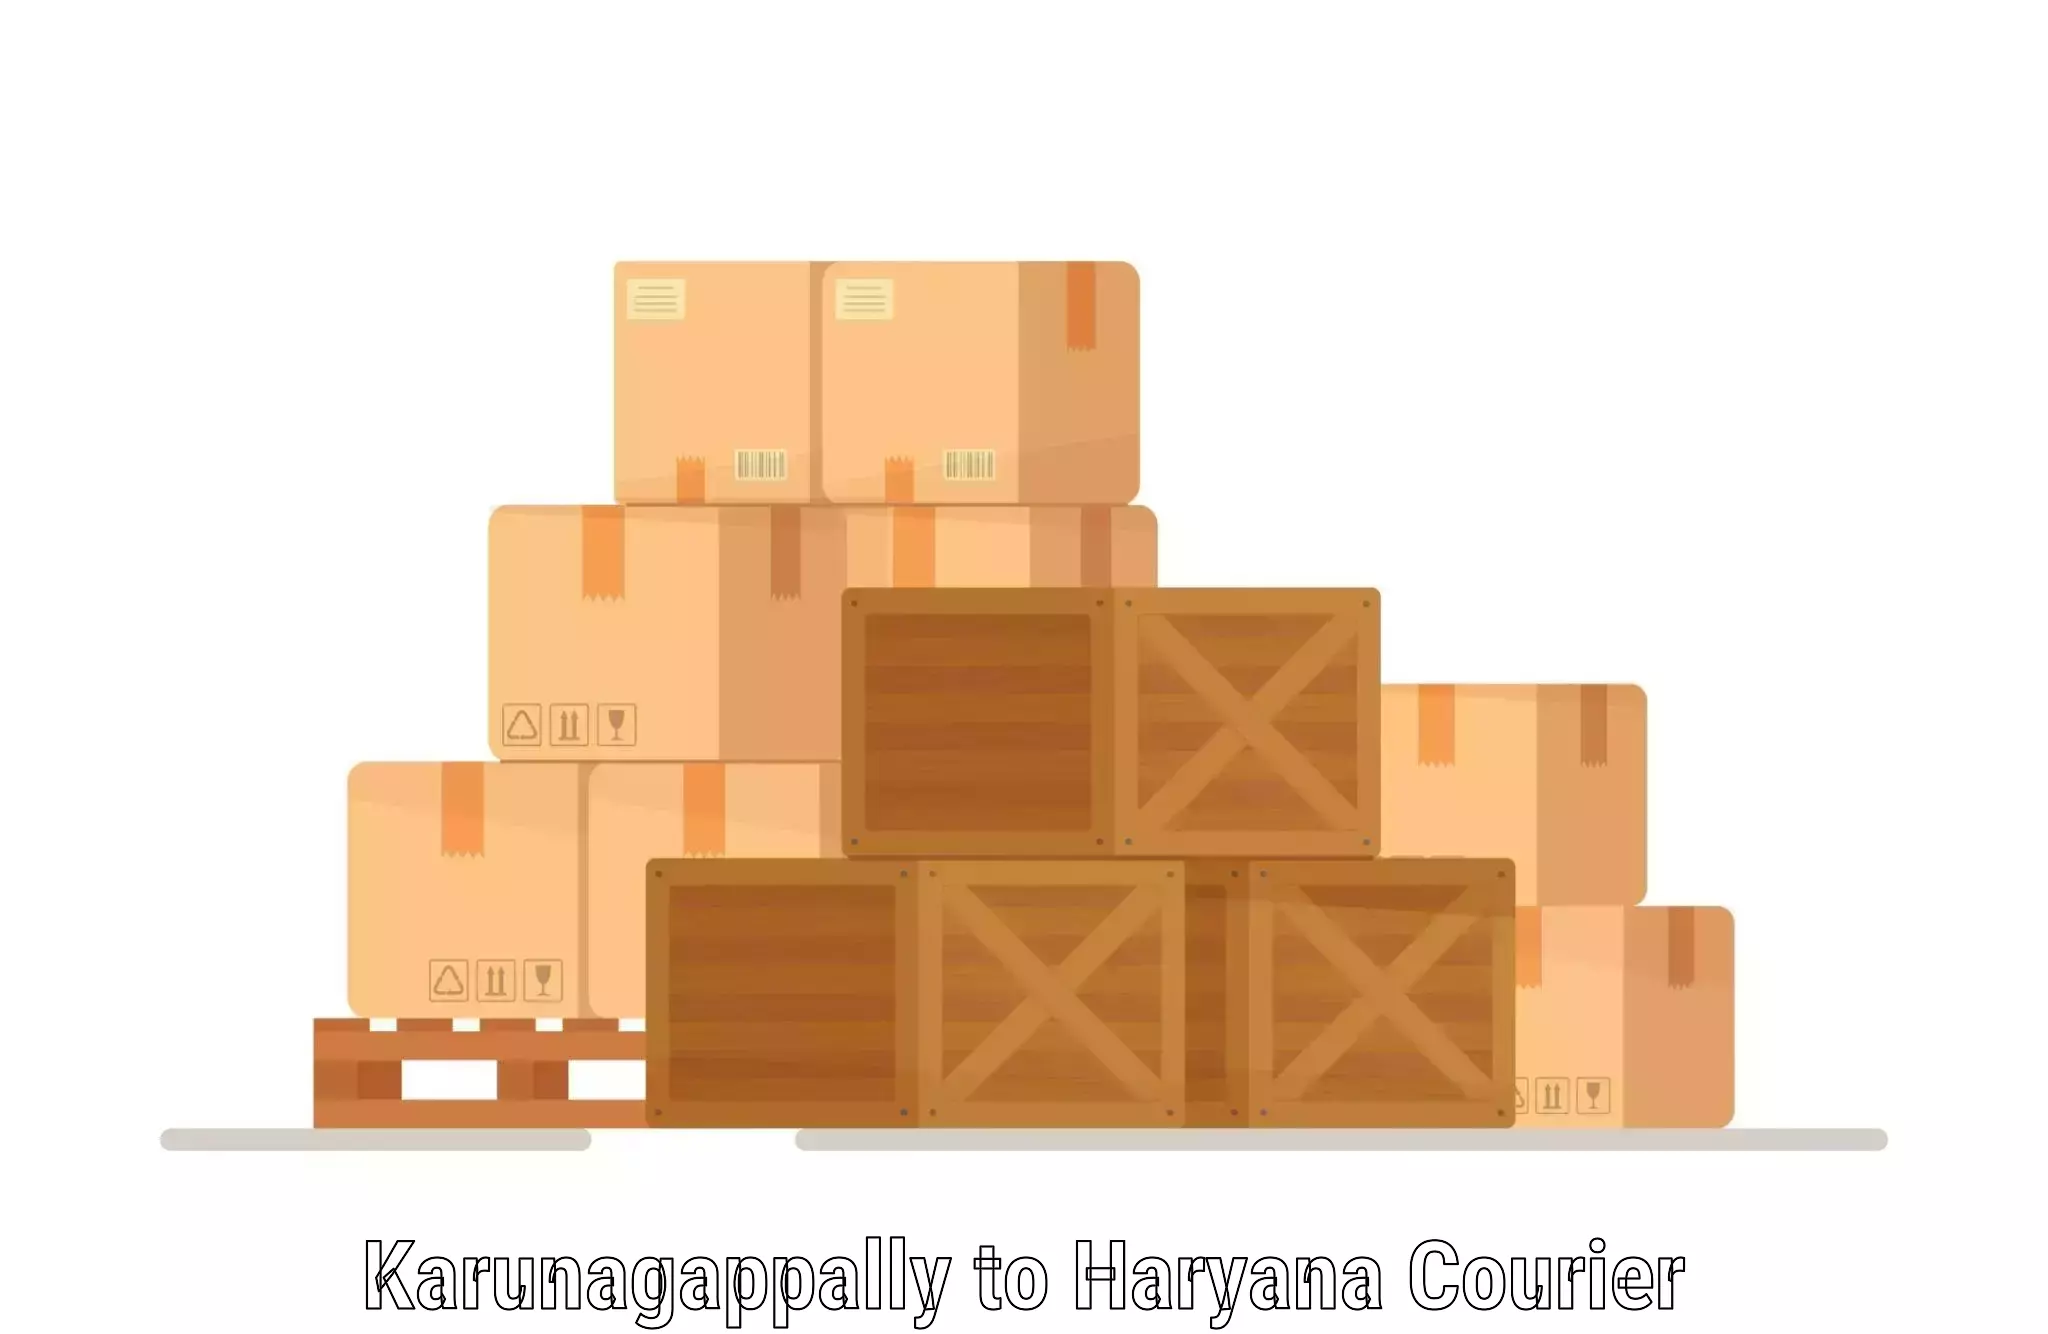 Automated shipping processes Karunagappally to Pataudi